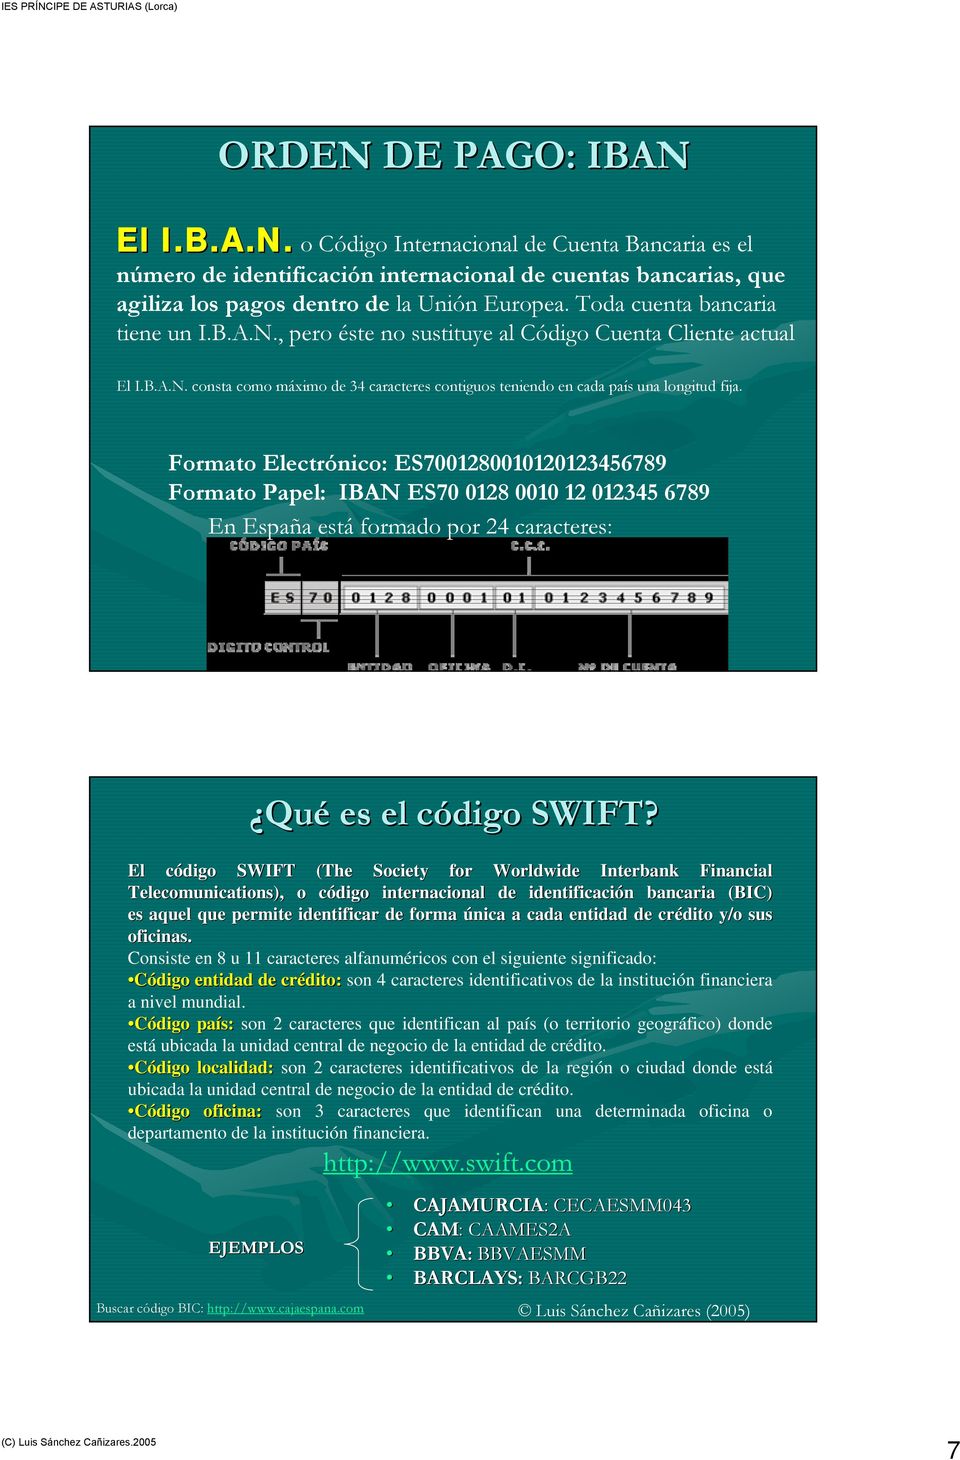 Formato Electrónico: ES7001280010120123456789 Formato Papel: IBAN ES70 0128 0010 12 012345 6789 En España está formado por 24 caracteres: Qué es el código c SWIFT?